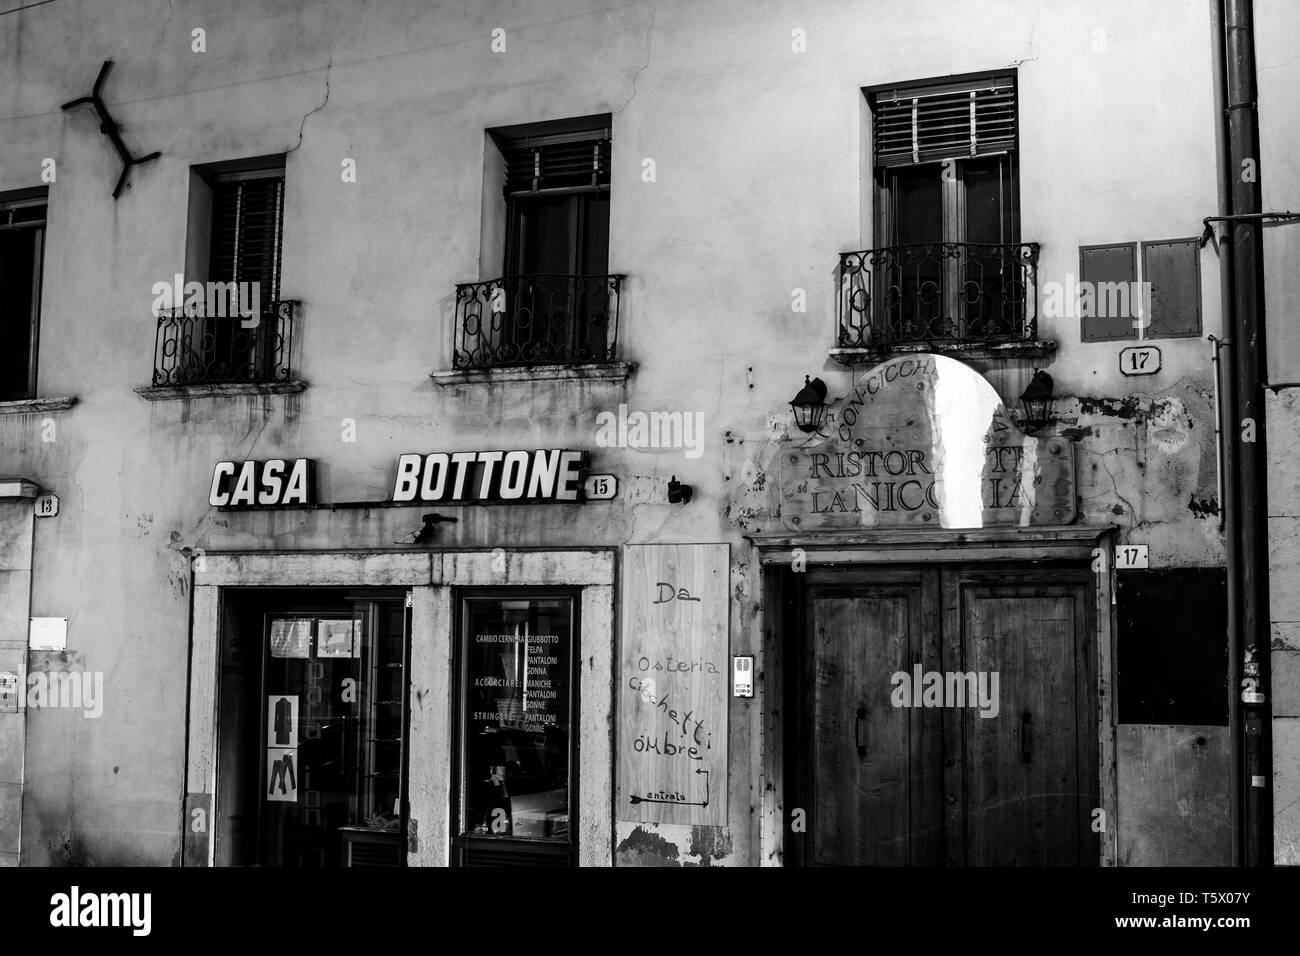 Ancienne vue de monochrome d'un ancien bâtiment avec un petit magasin sur un square at night Banque D'Images